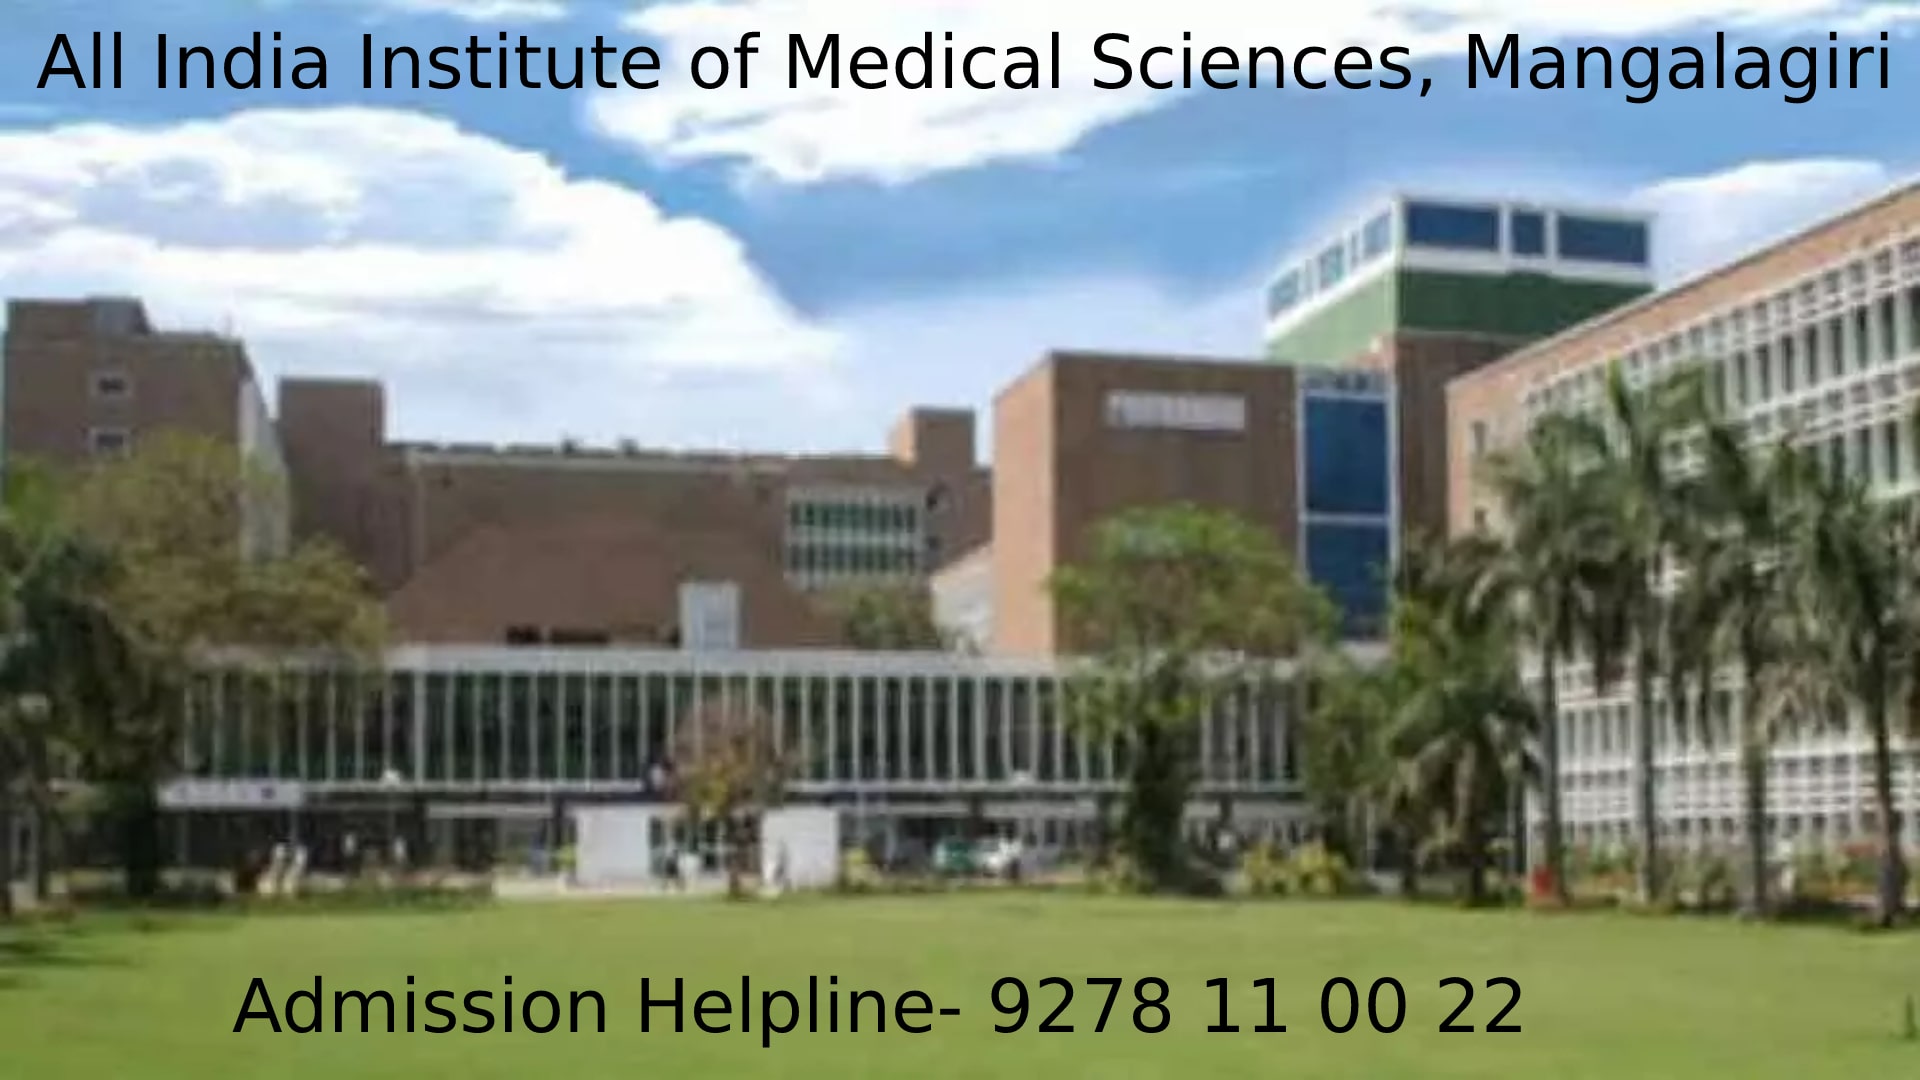 All India Institute of Medical Sciences (AIIMS) Mangalagiri